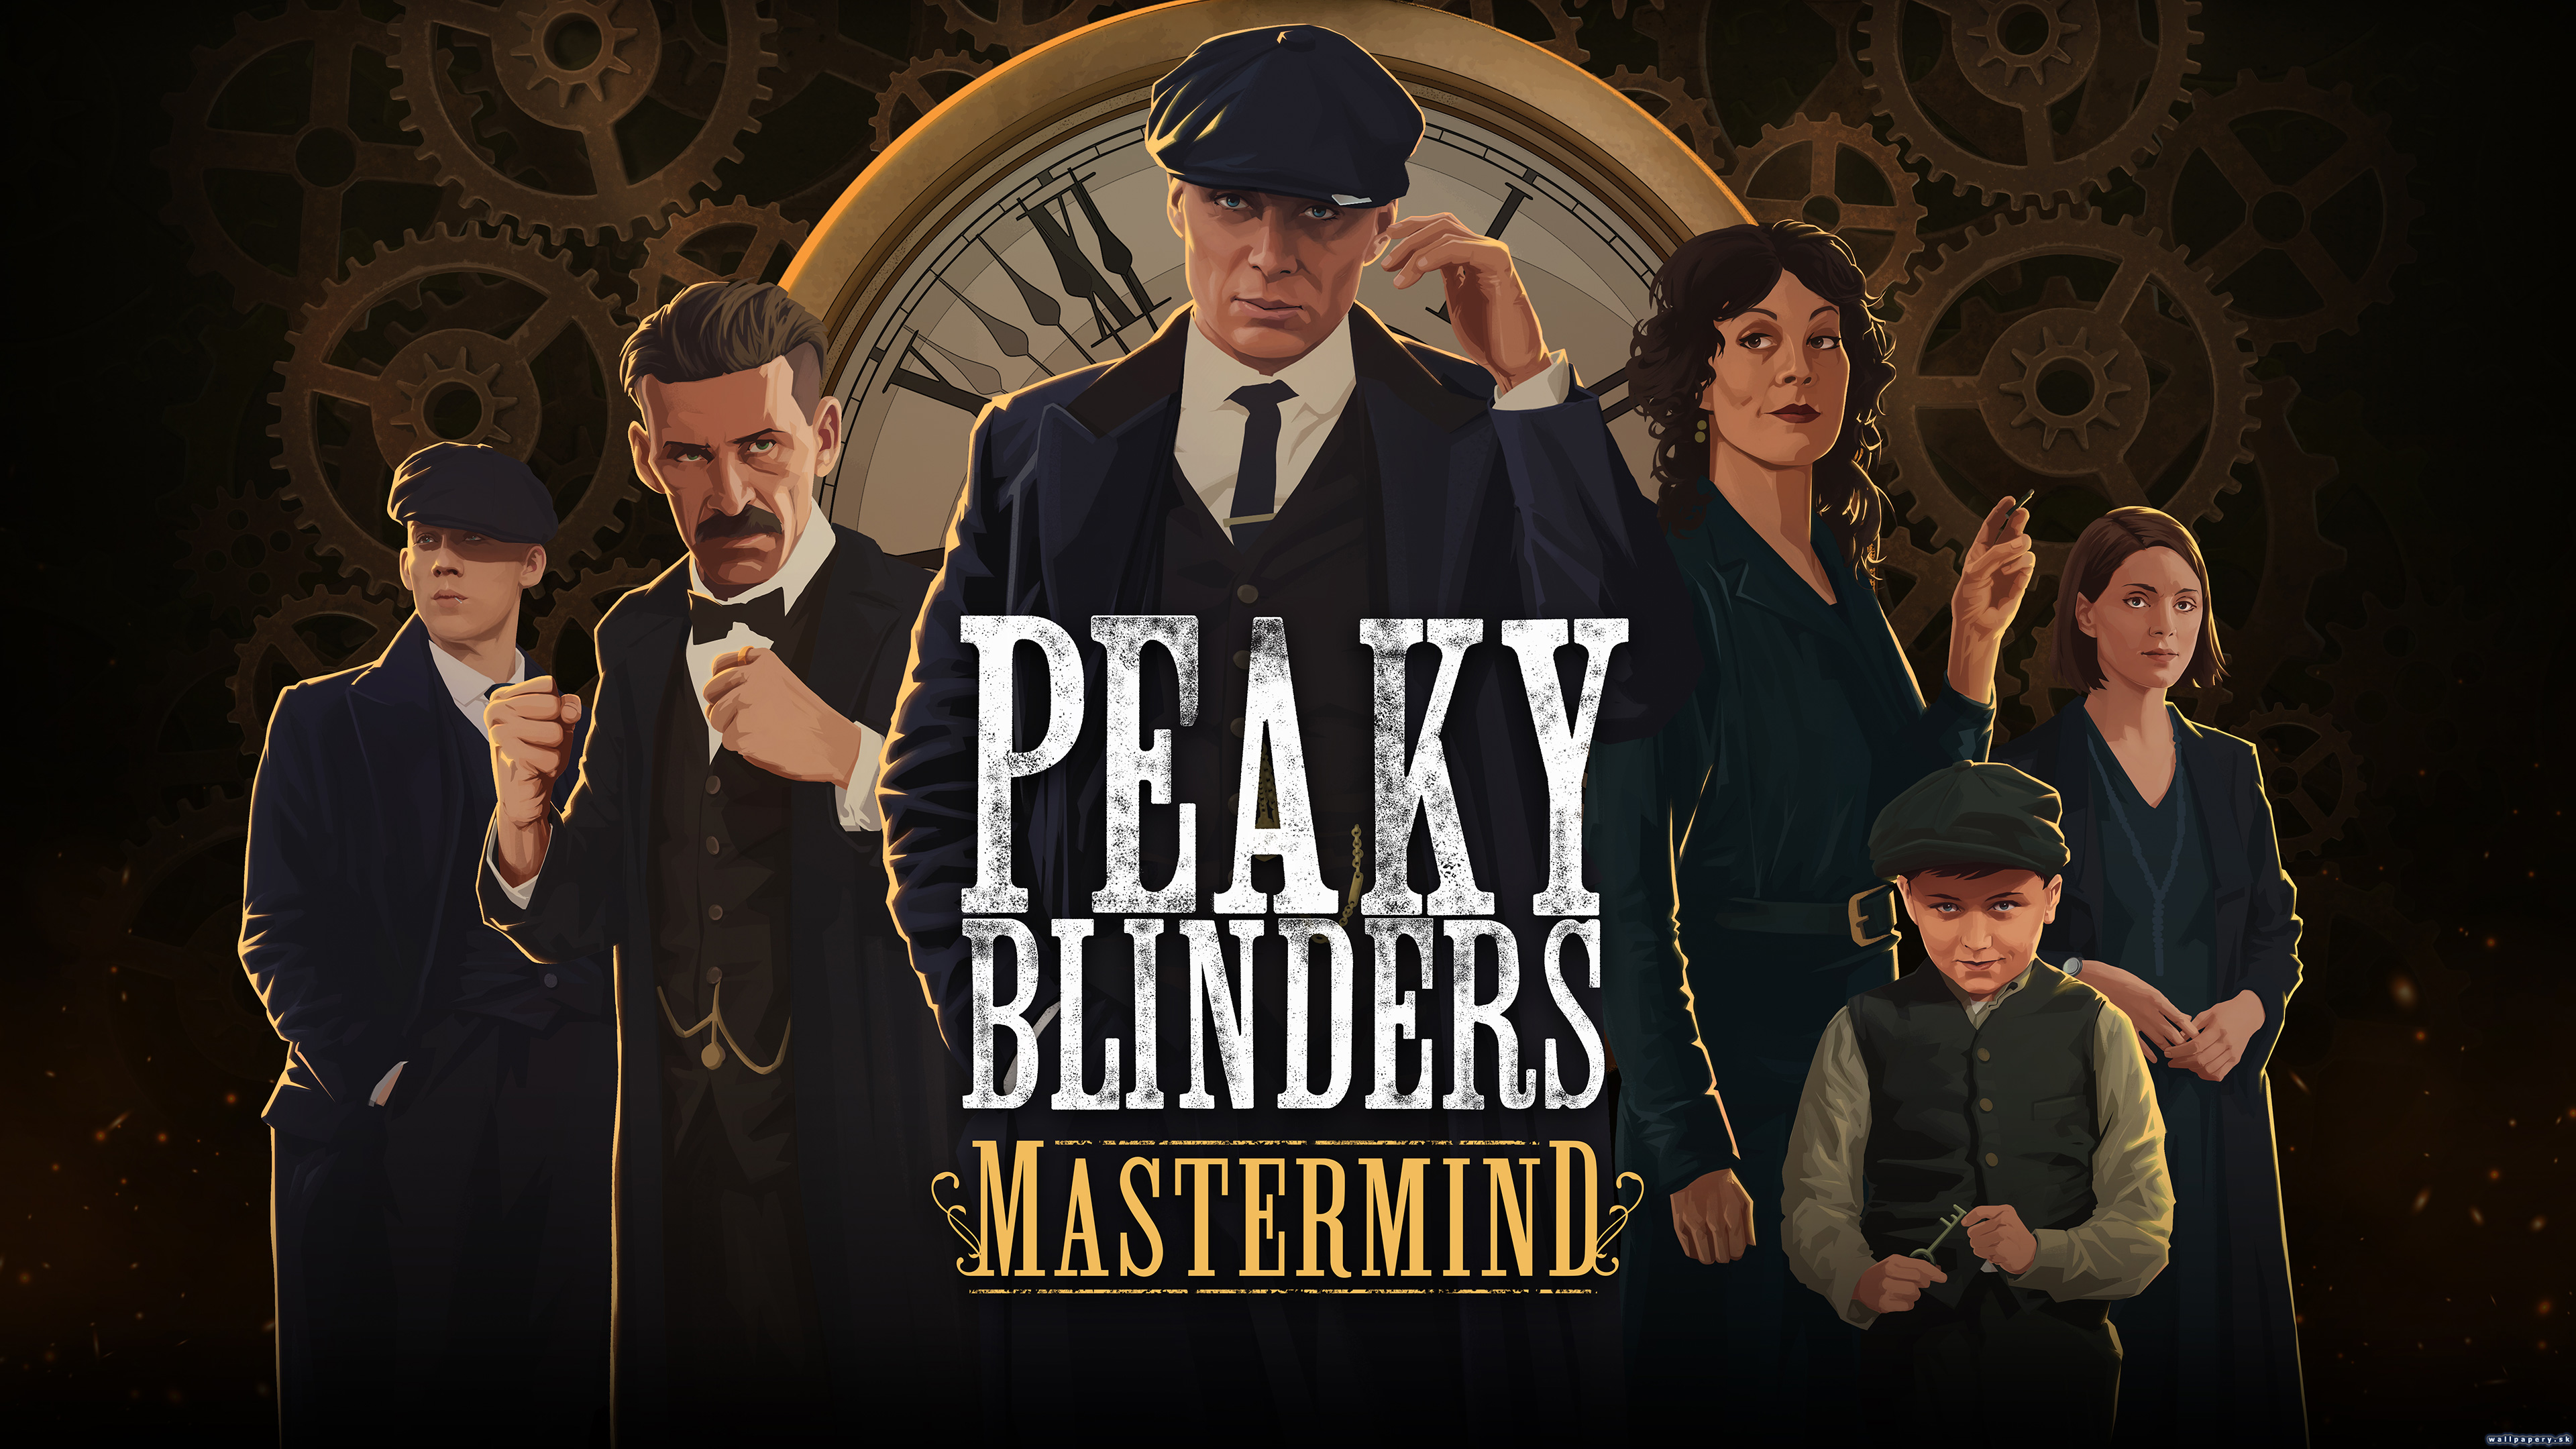 Peaky Blinders: Mastermind - wallpaper 1